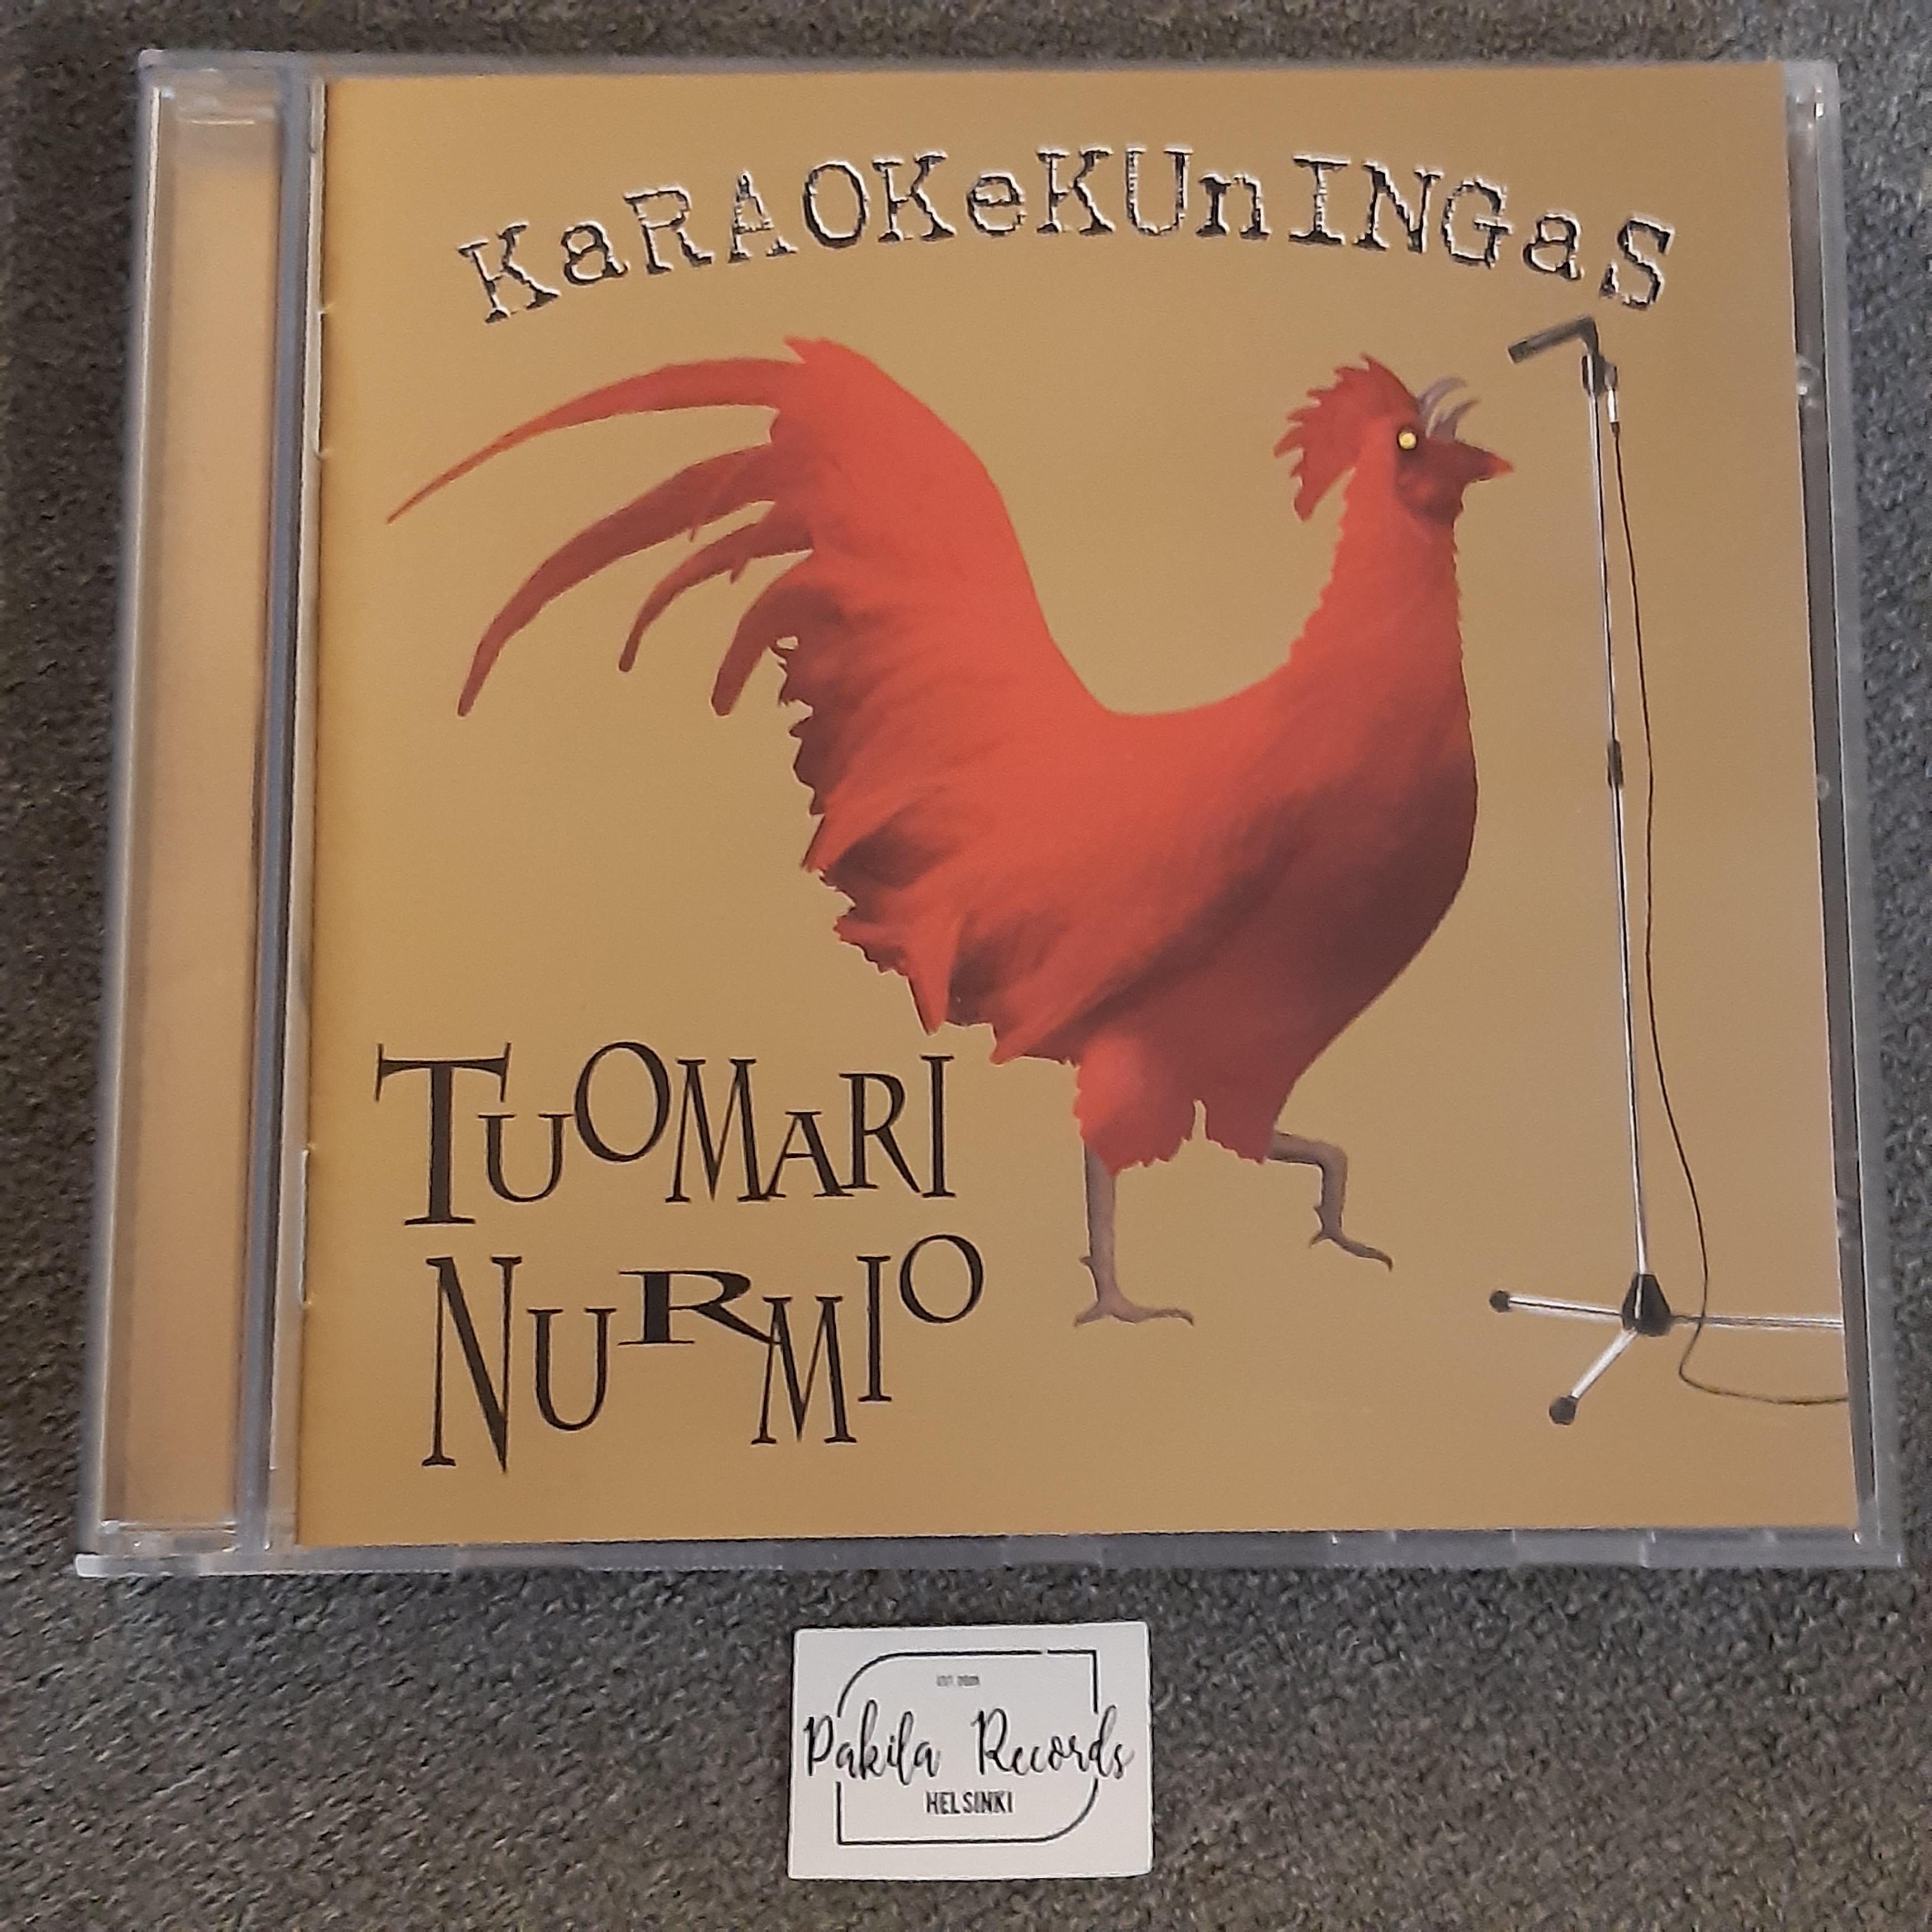 Tuomari Nurmio - Karaokekuningas - CD (käytetty)